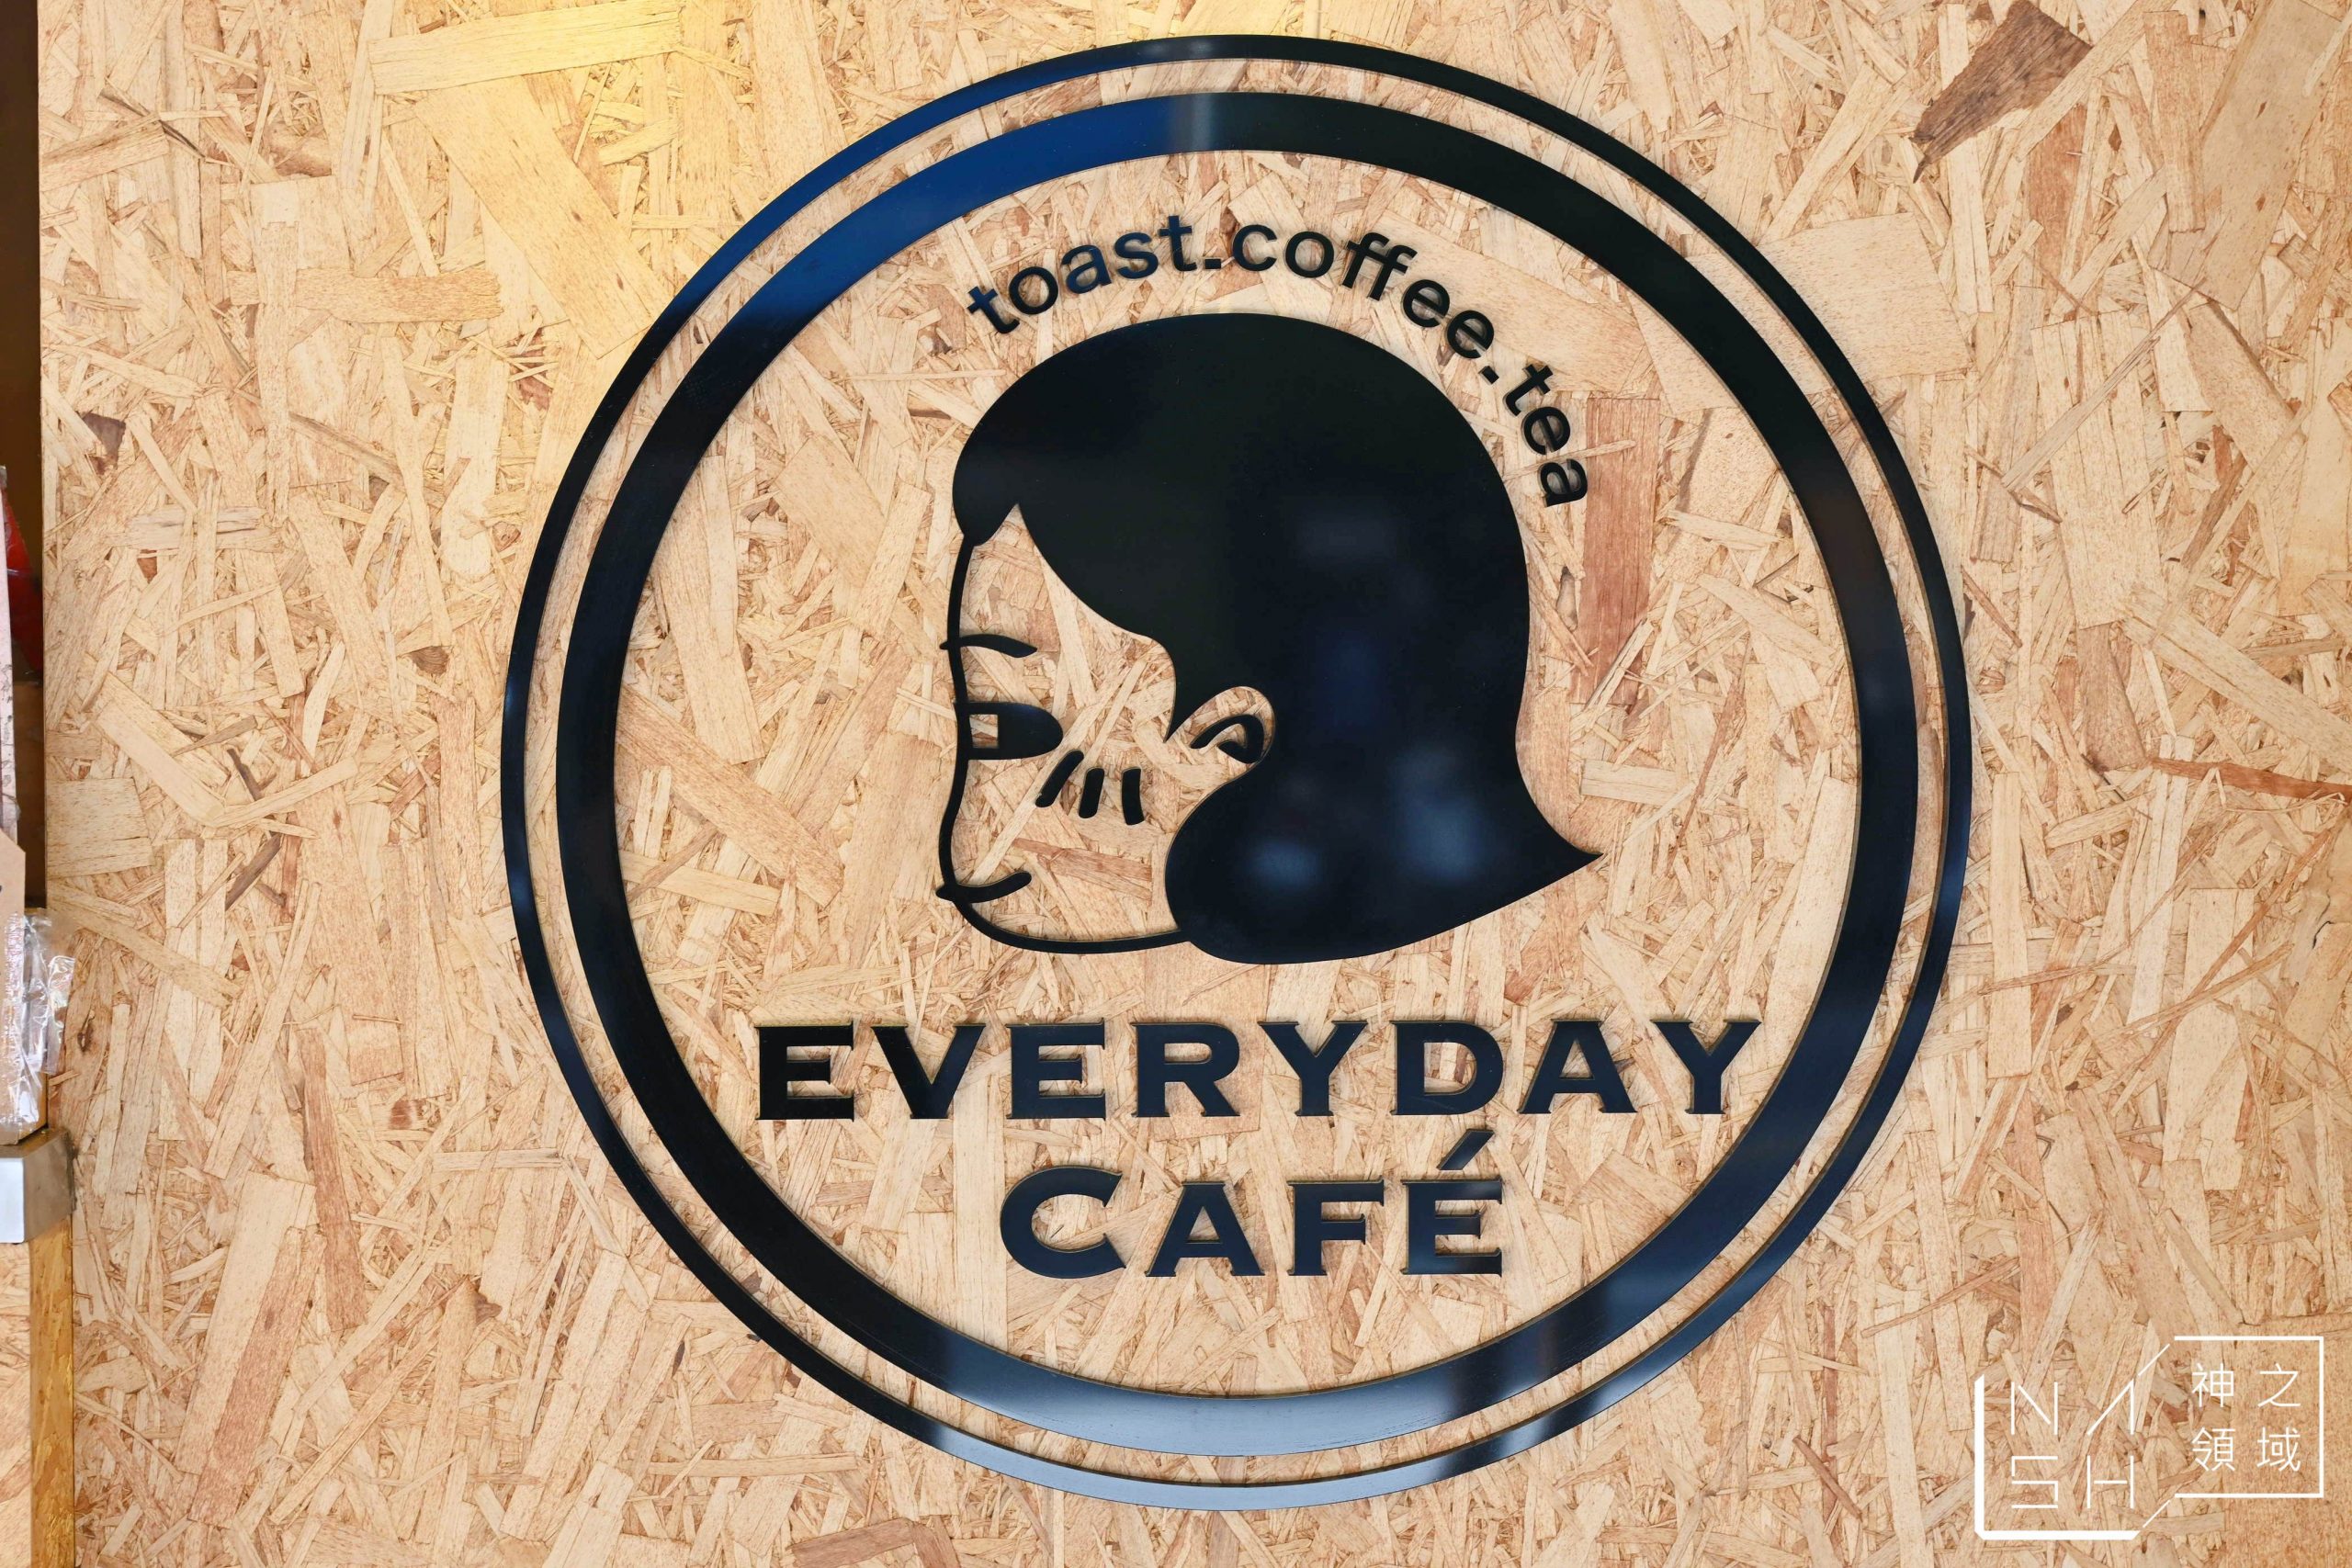 EVERYDAY CAFE